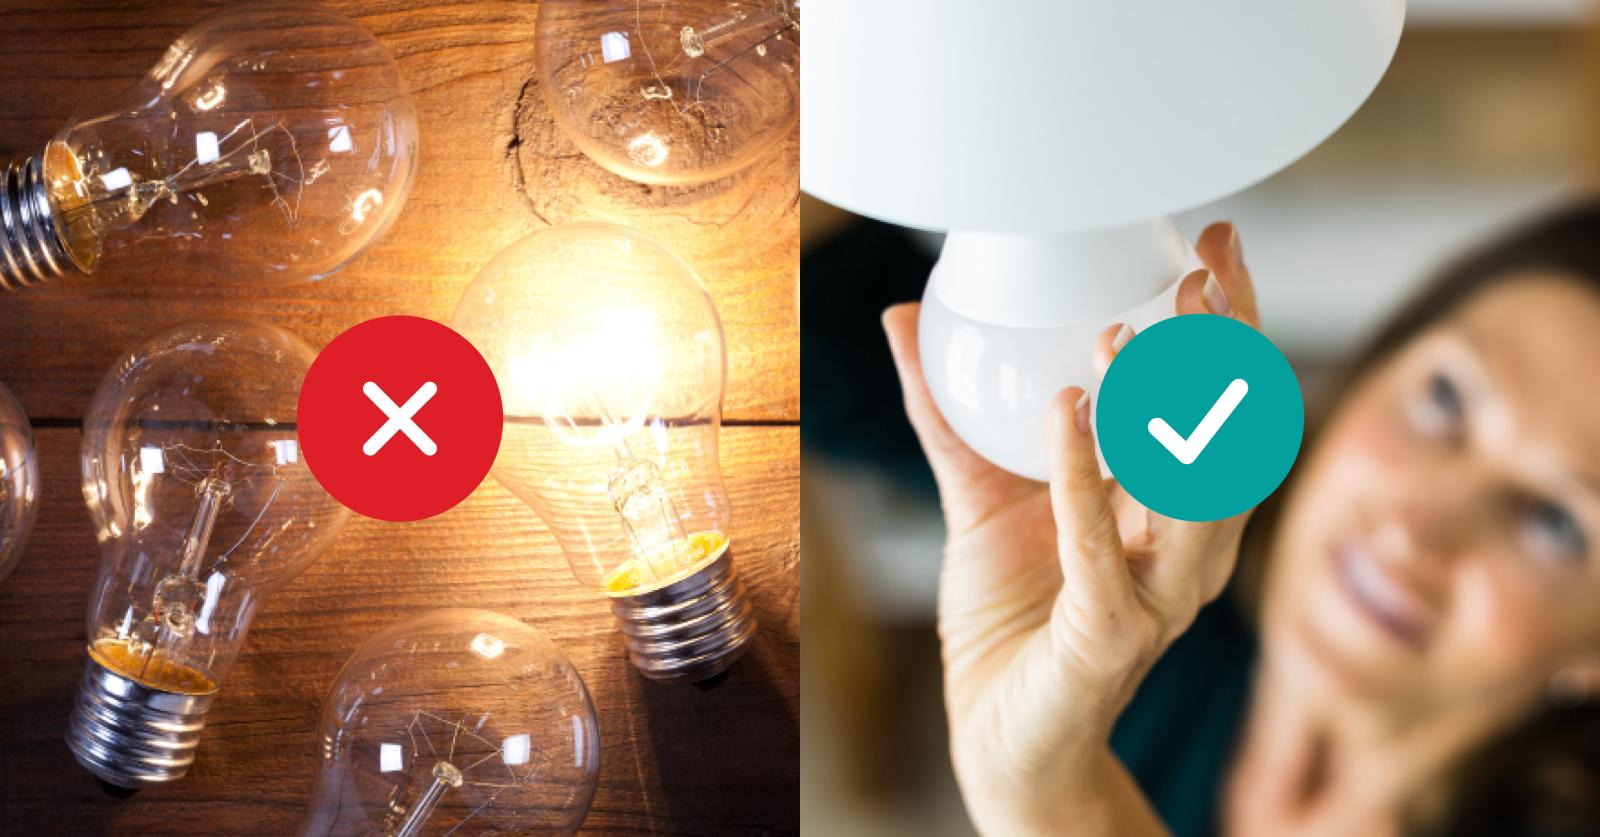 Energy efficient light bulbs